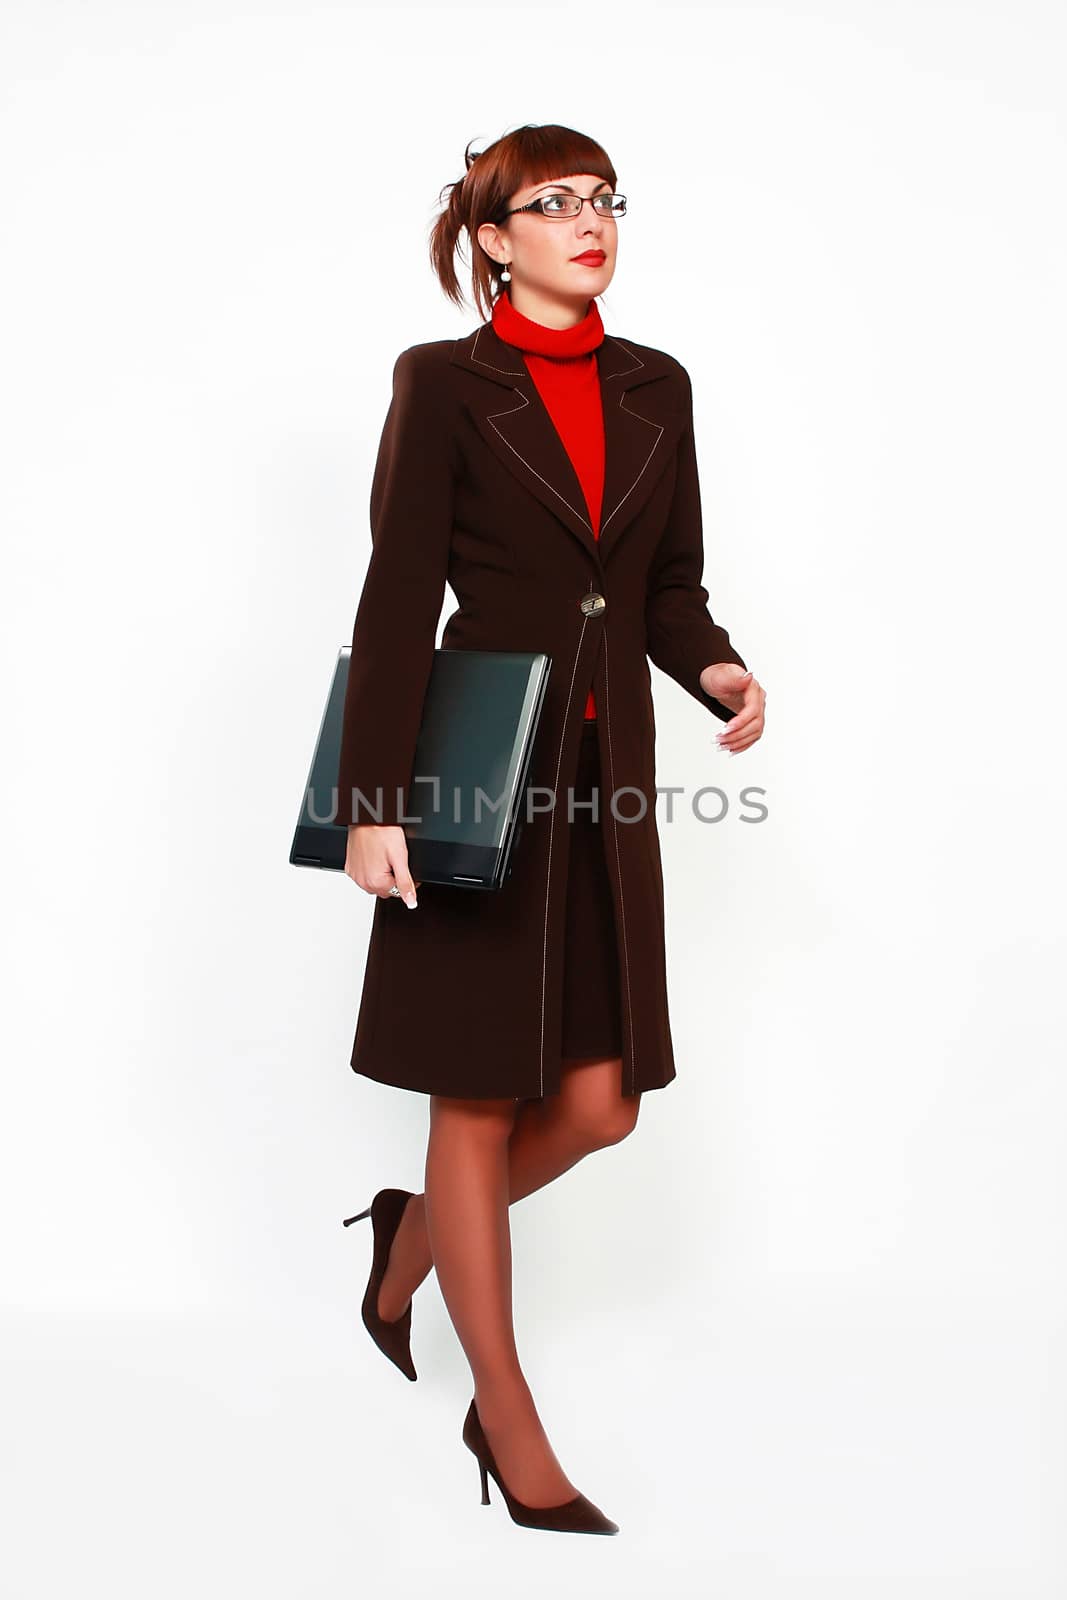 portrait of businesswoman walking